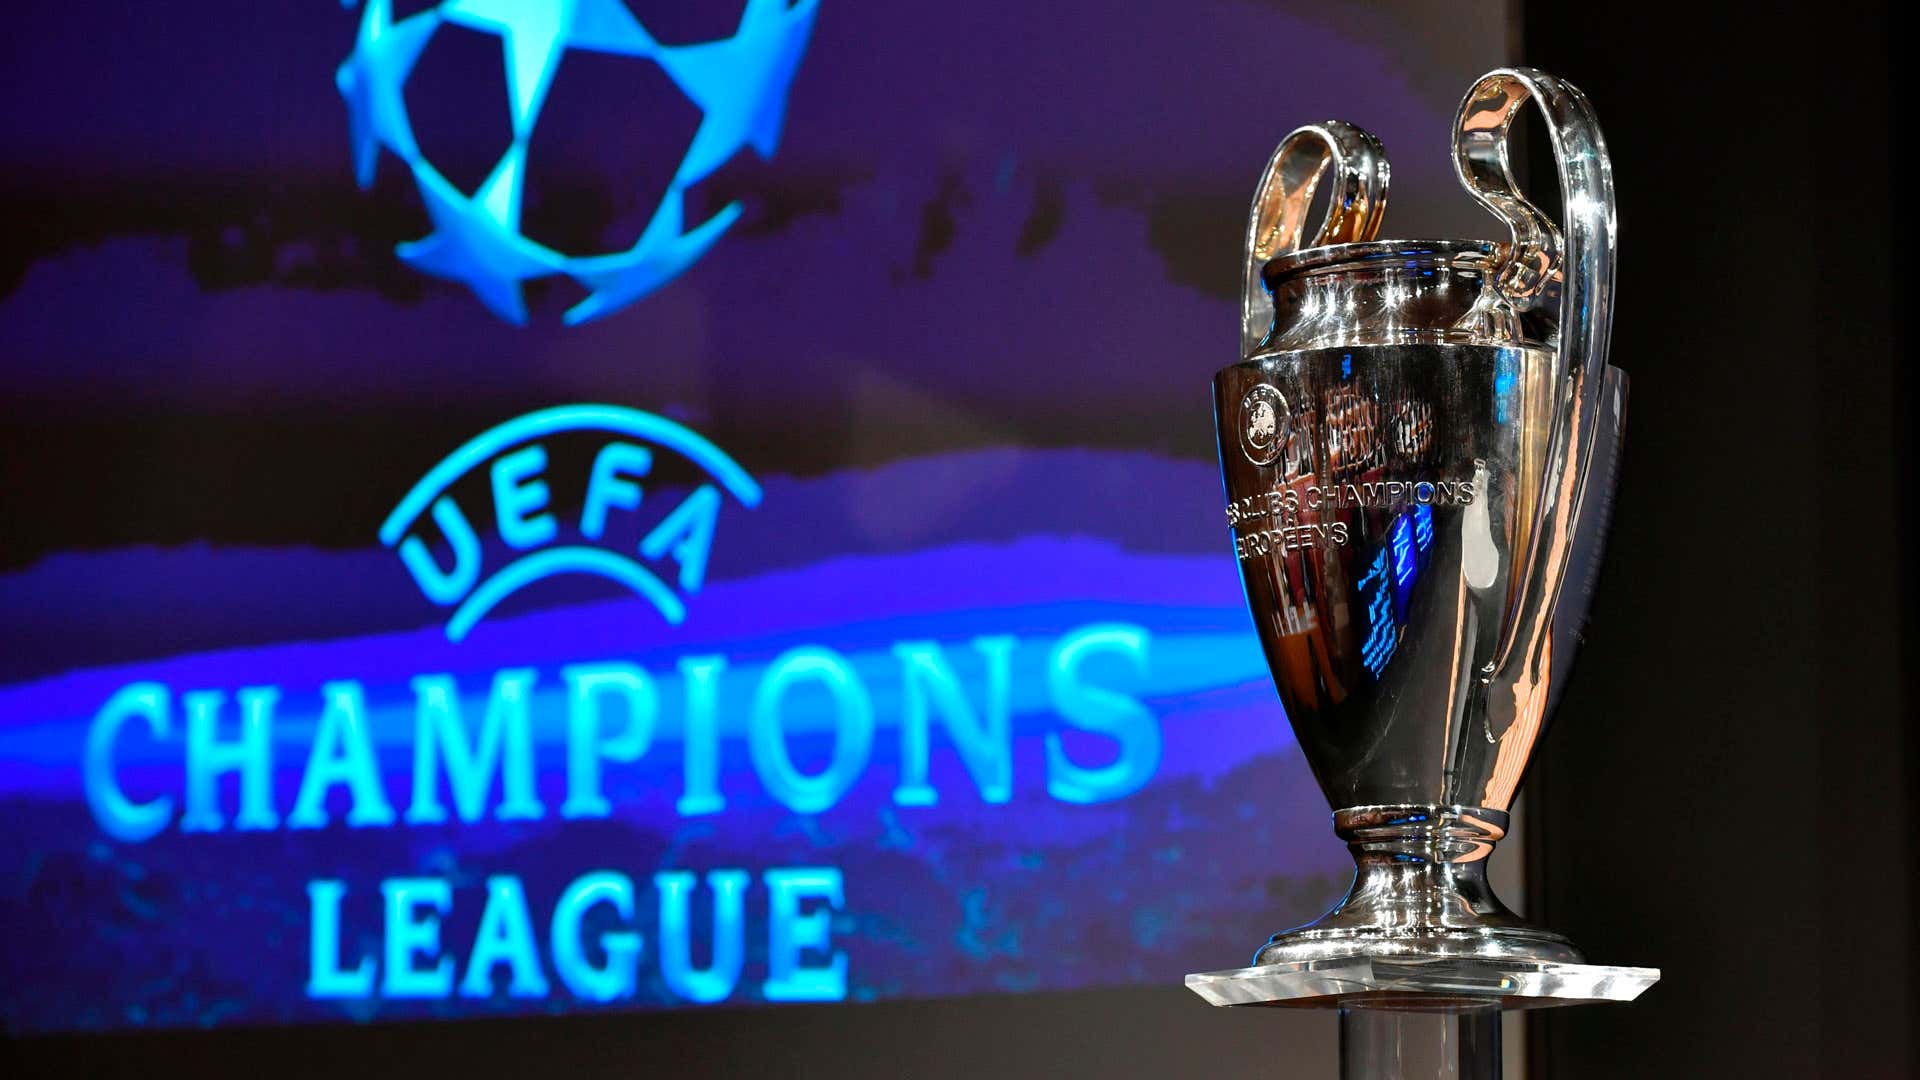 Champions League trophy 2016-17